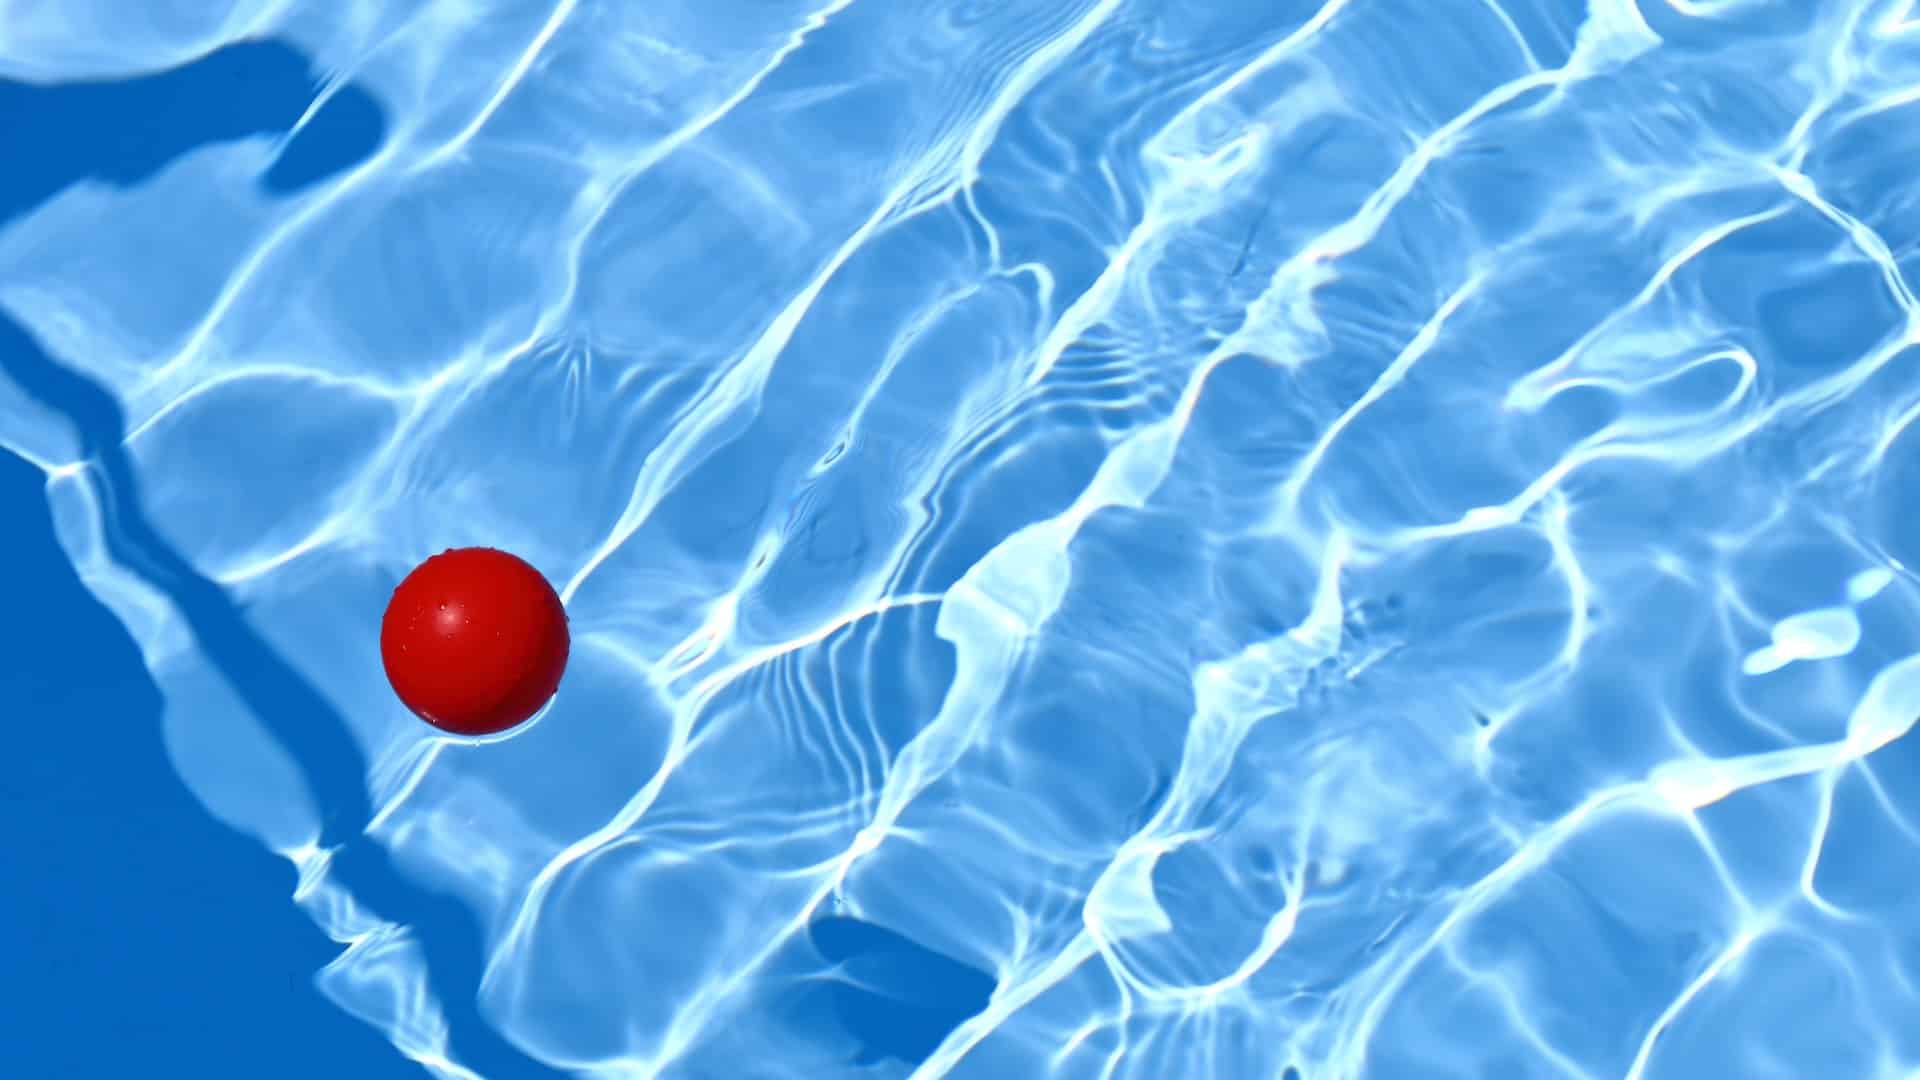 Comment entretenir une eau claire dans sa piscine ?